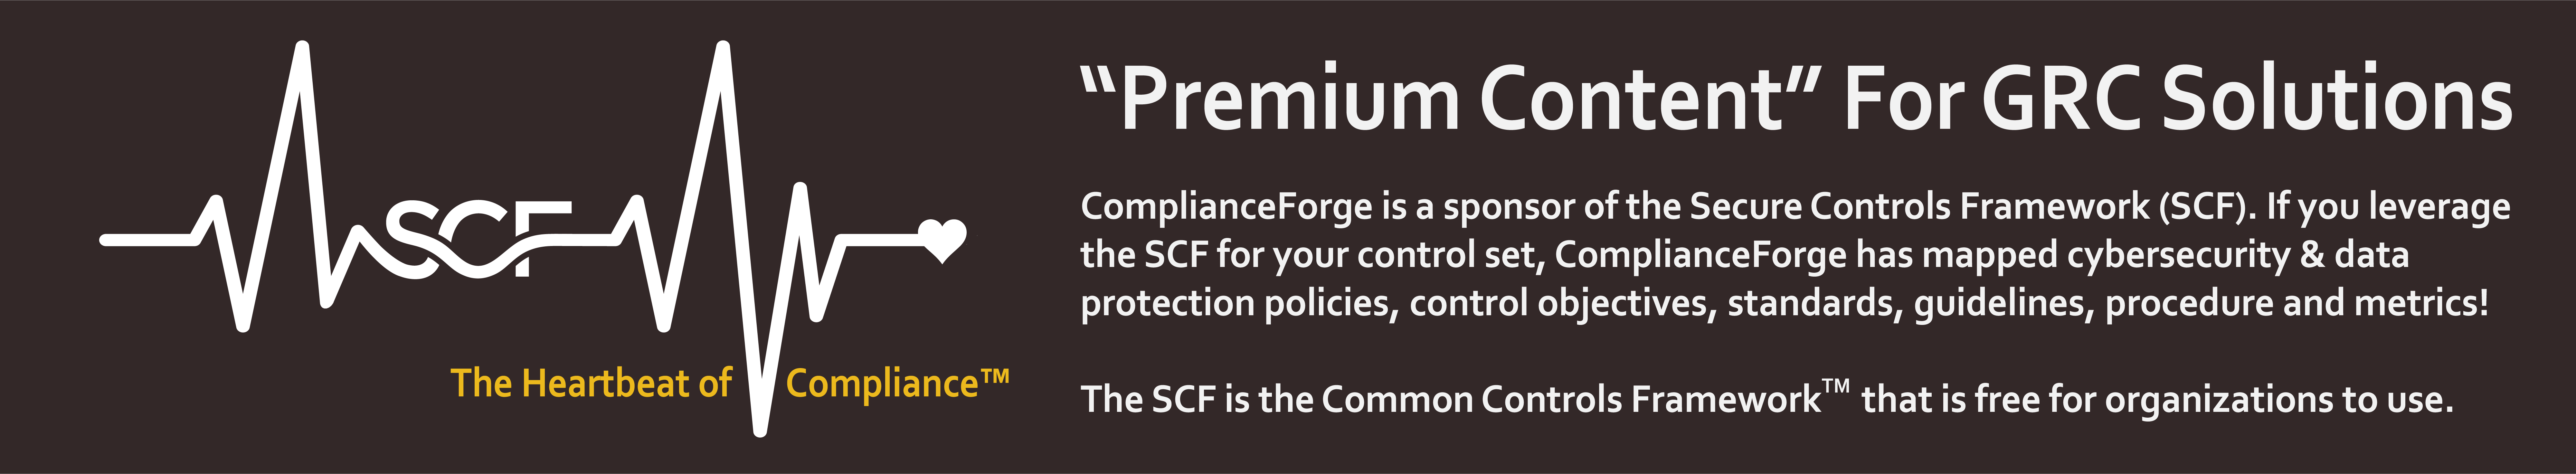 GRC premium content | SCF policies standards procedures